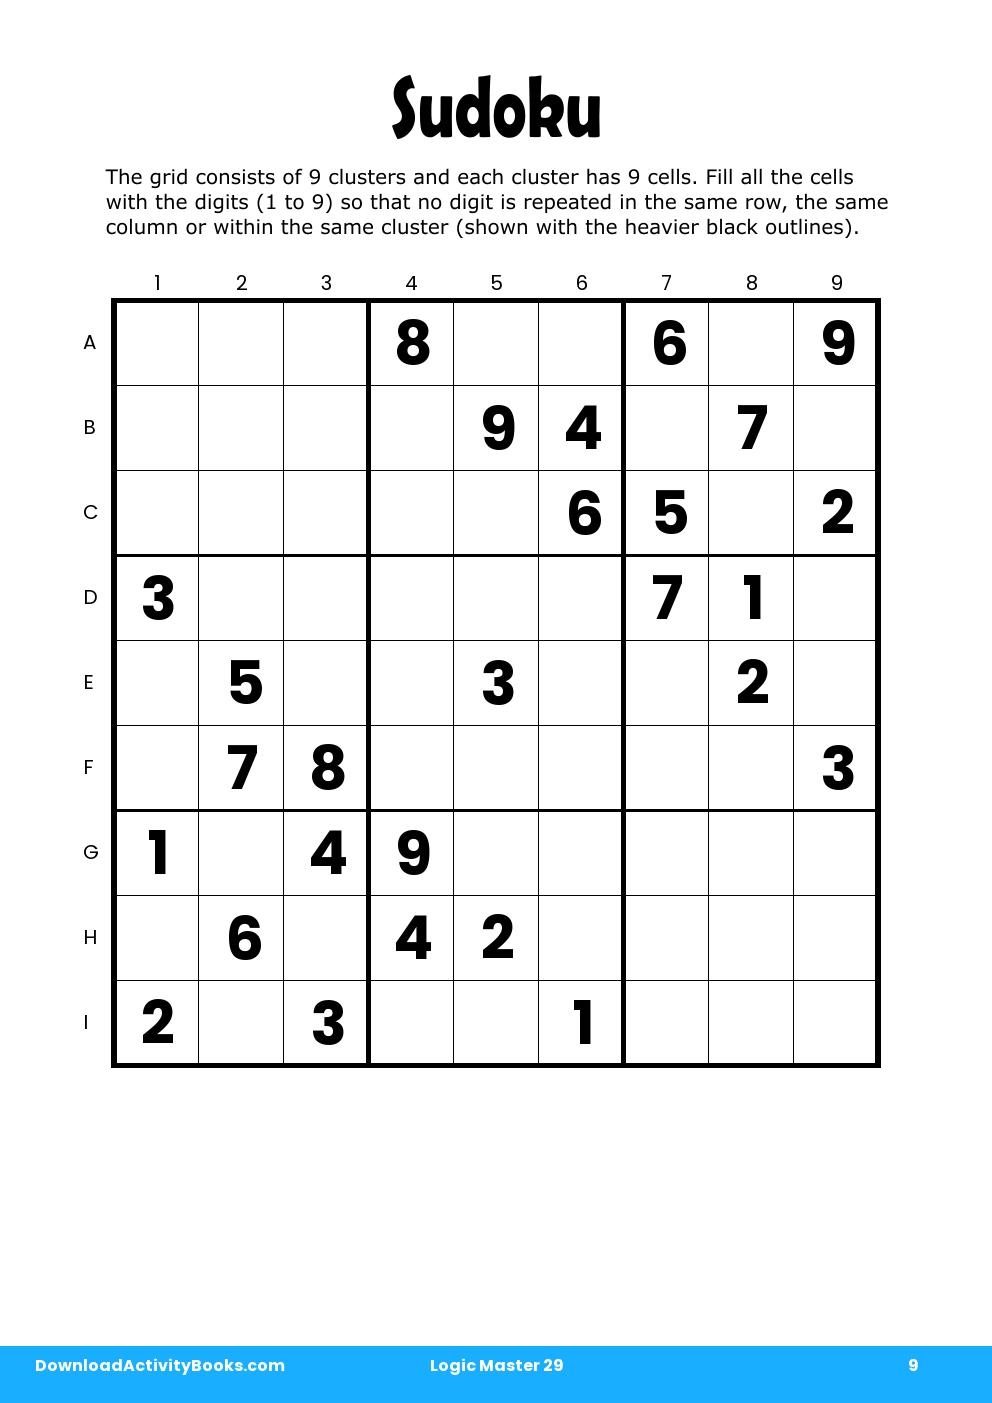 Sudoku in Logic Master 29